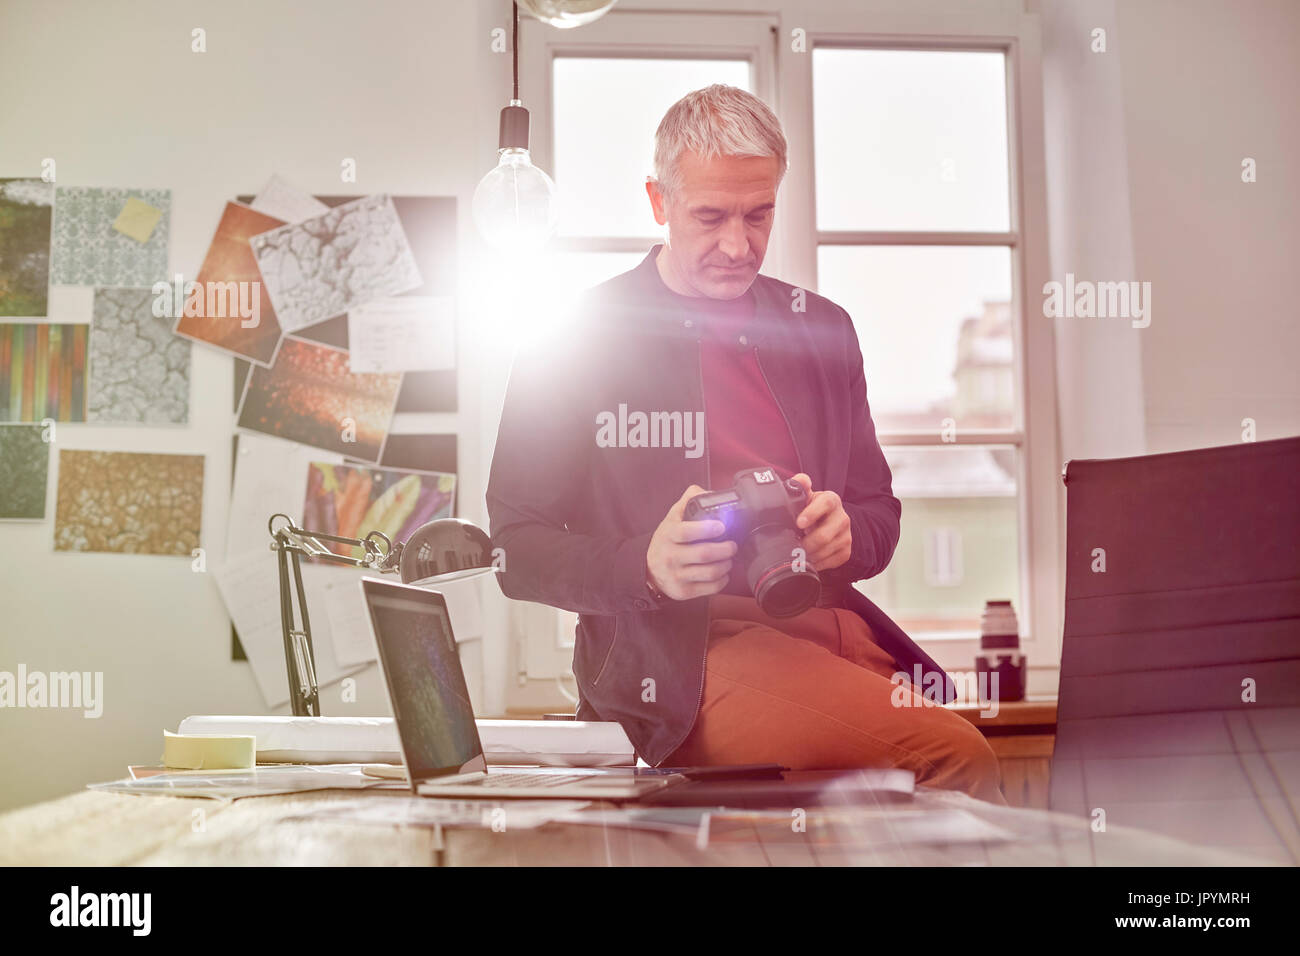 Photographe mâle en utilisant un appareil photo numérique de bureau ensoleillé Banque D'Images